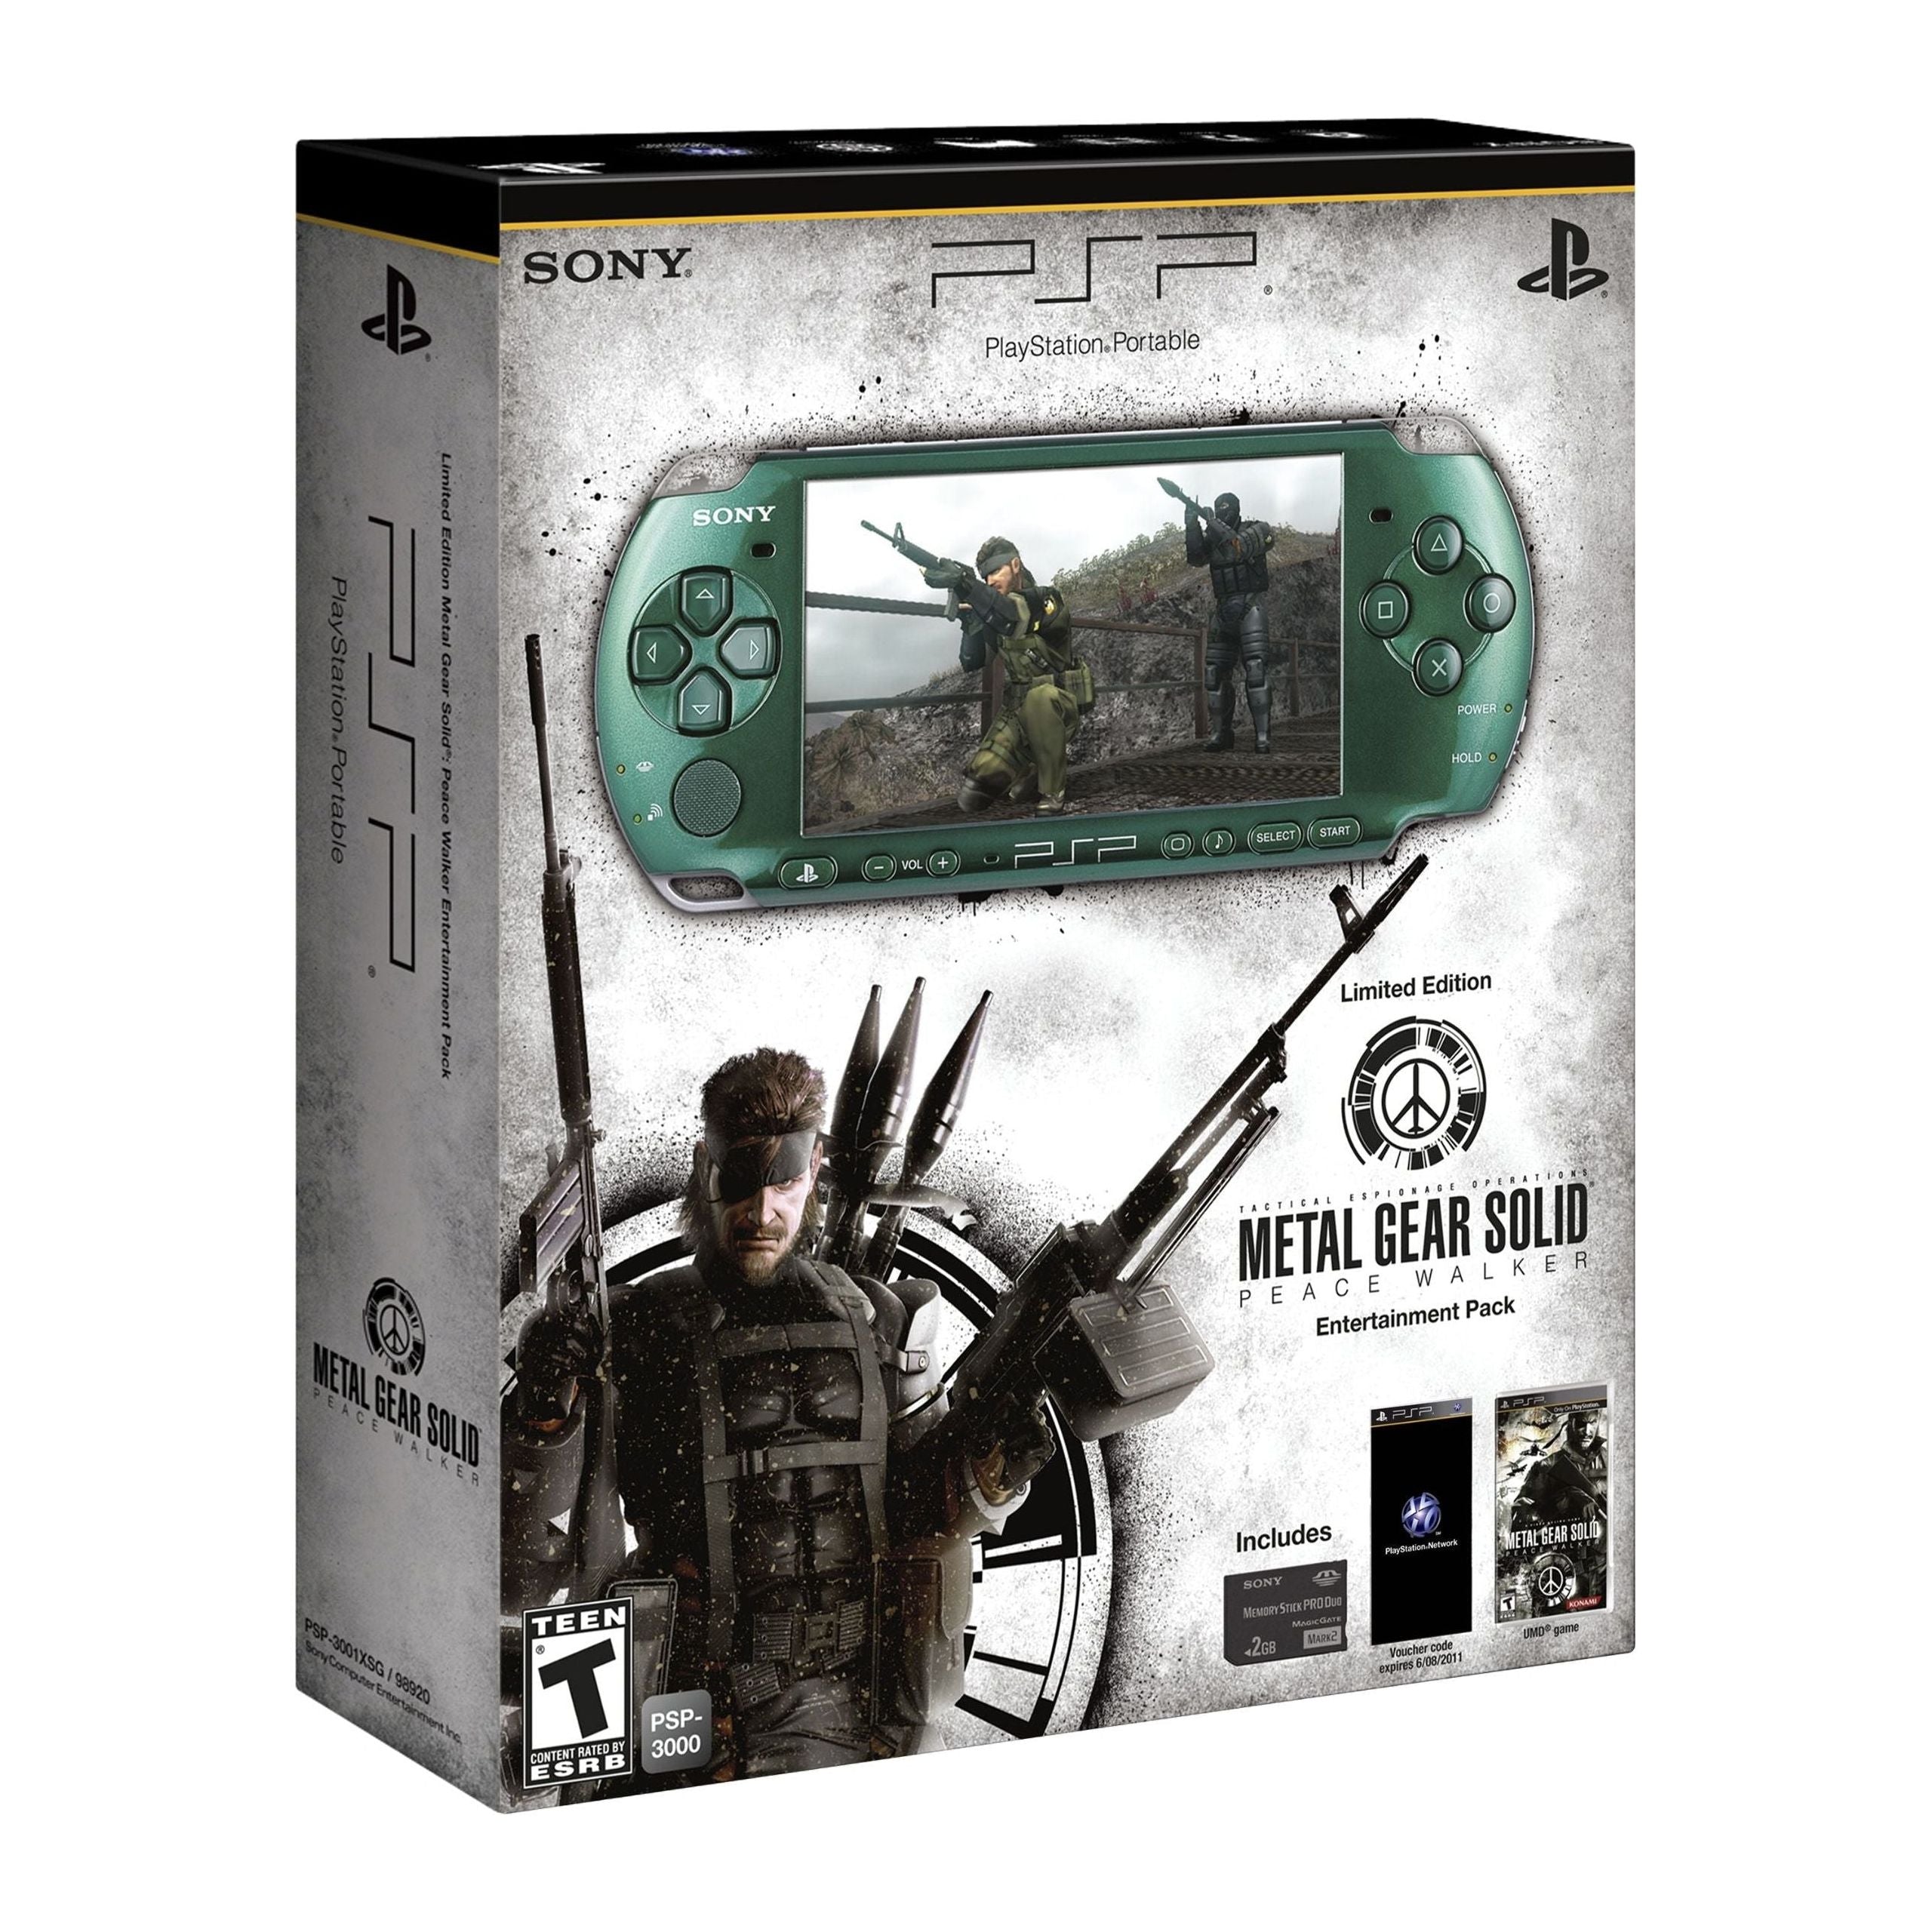 Pack de divertissement PlayStation Portable Metal Gear Solid Peace Walker en édition limitée